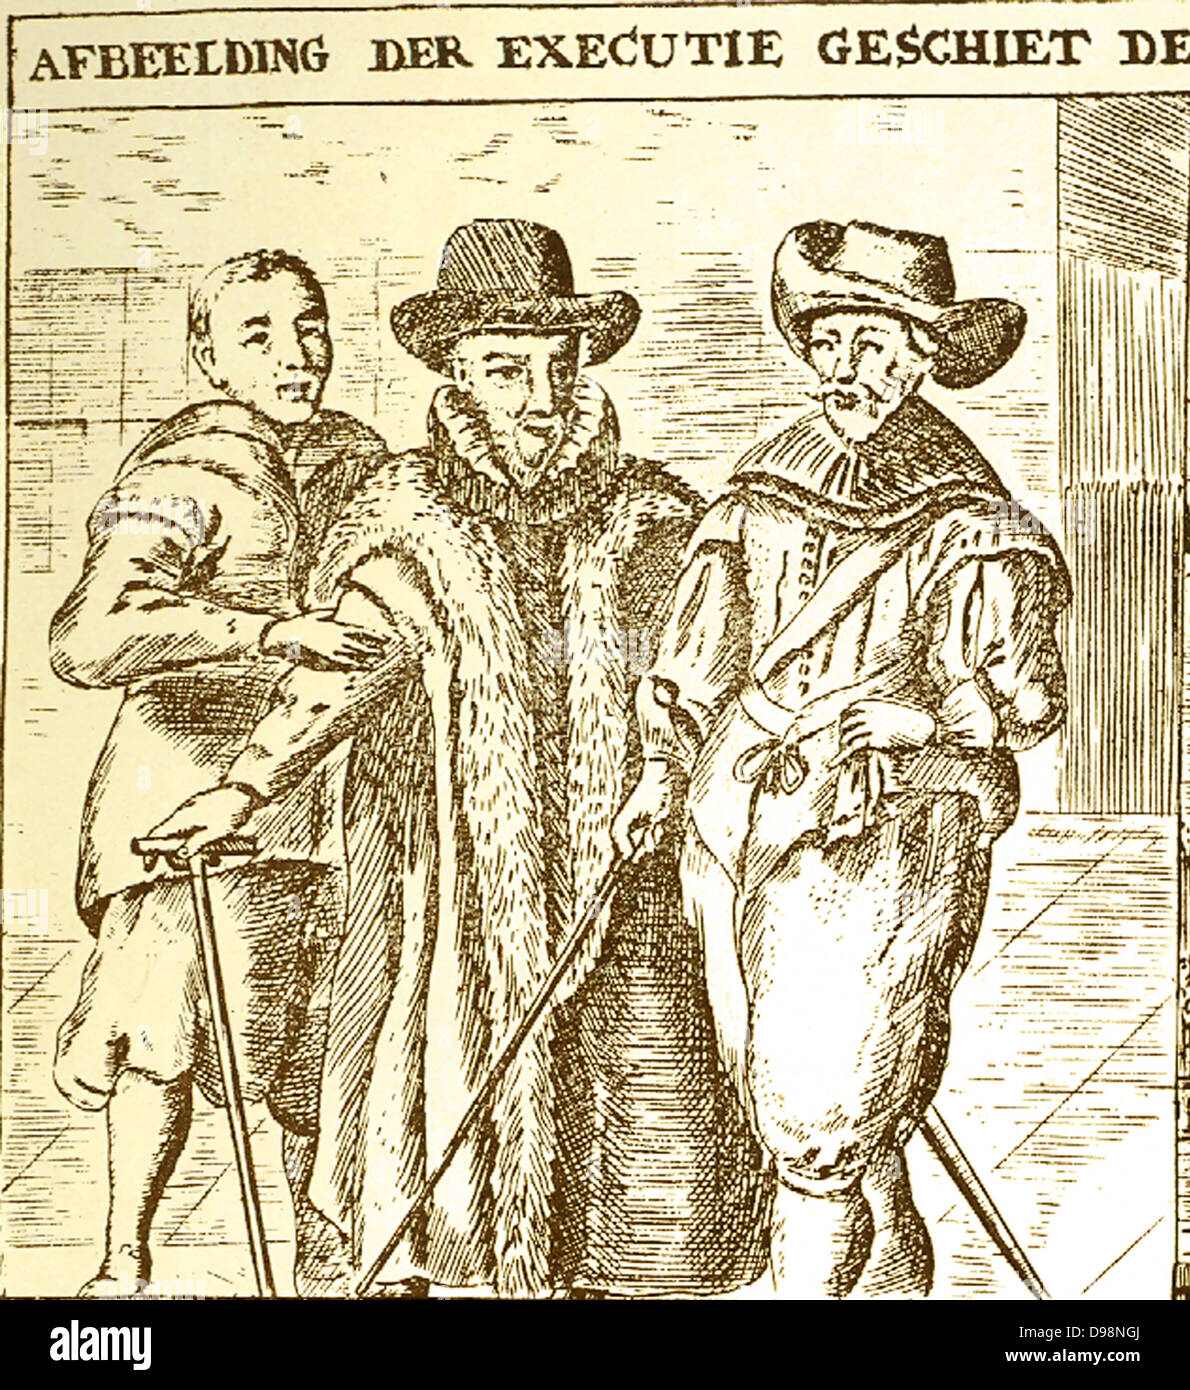 Johan van Oldenbarnevelt, signore di Berkel en Rodenrijs (1547 - 1619) statista olandese che ha giocato un ruolo importante nella lotta olandese per l'indipendenza dalla Spagna. Il 23 agosto 1618, per ordine del States-General, Oldenbarnevelt e i suoi principali sostenitori, Hugo Grotius, Gilles van Ledenberg, Rombout Hogerbeets e Jacob Dircksz de Graeff, sono stati arrestati o perso le loro posizioni politiche di governo. Egli è stato eseguito all'Aja nel maggio 1619 Foto Stock